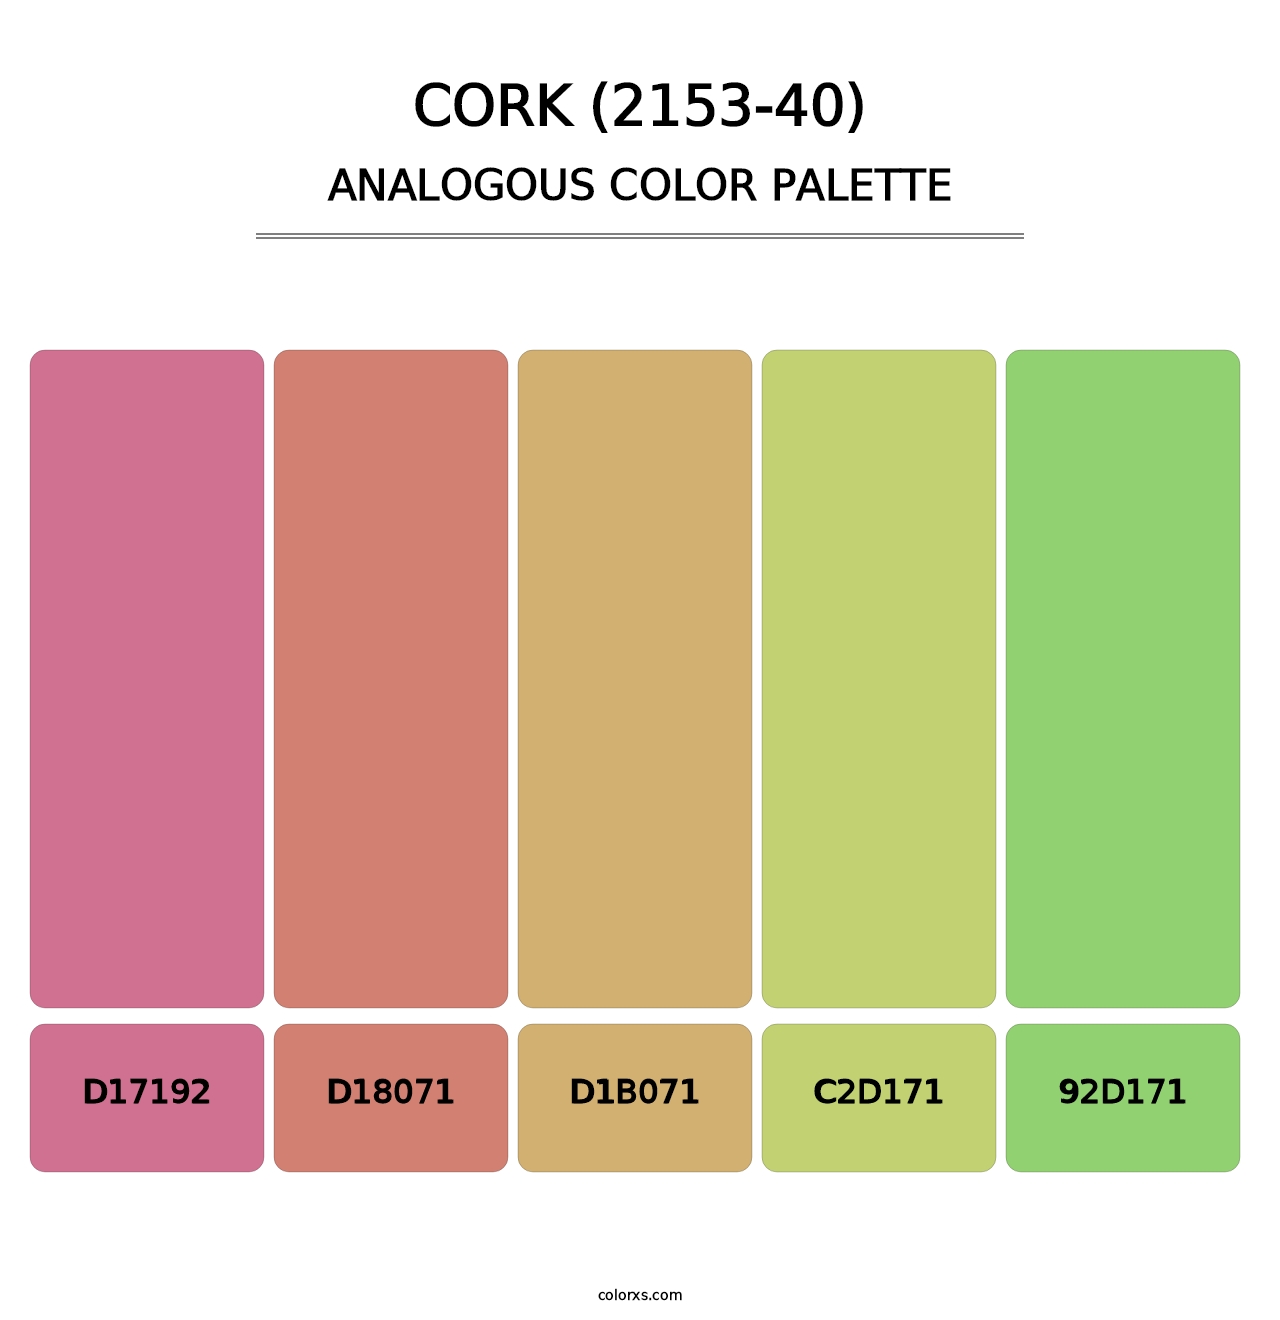 Cork (2153-40) - Analogous Color Palette